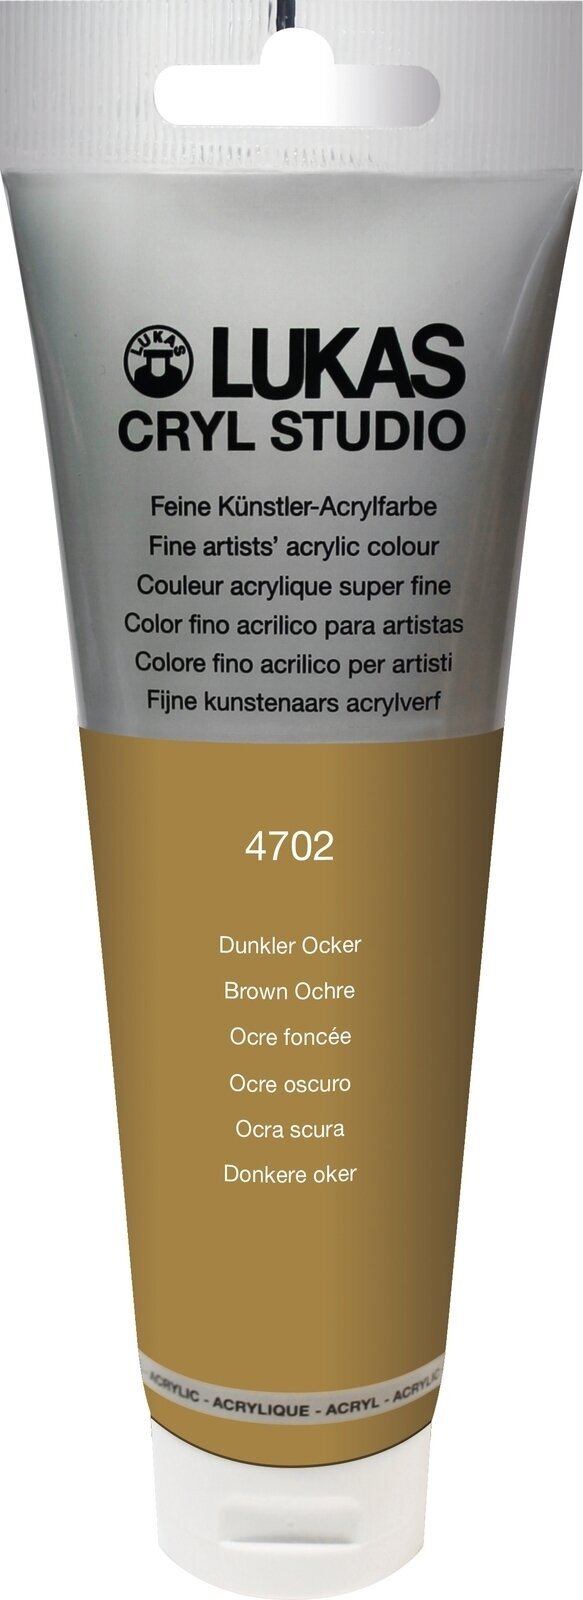 Akrylová barva Lukas Cryl Studio Akrylová barva 125 ml Brown Ochre